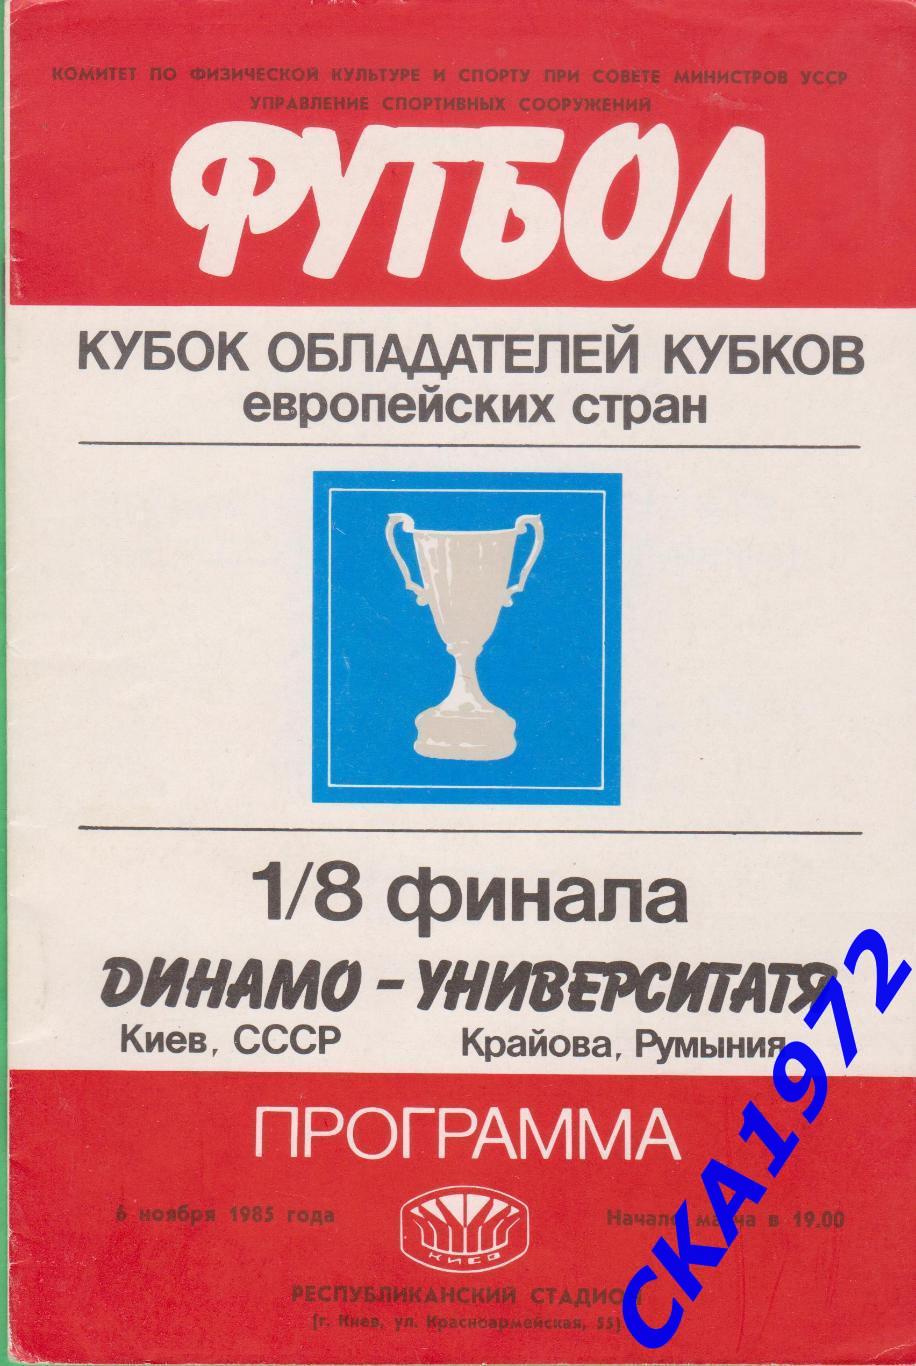 программа Динамо Киев - Университатя Румыния 1985 Кубок обладателей кубков